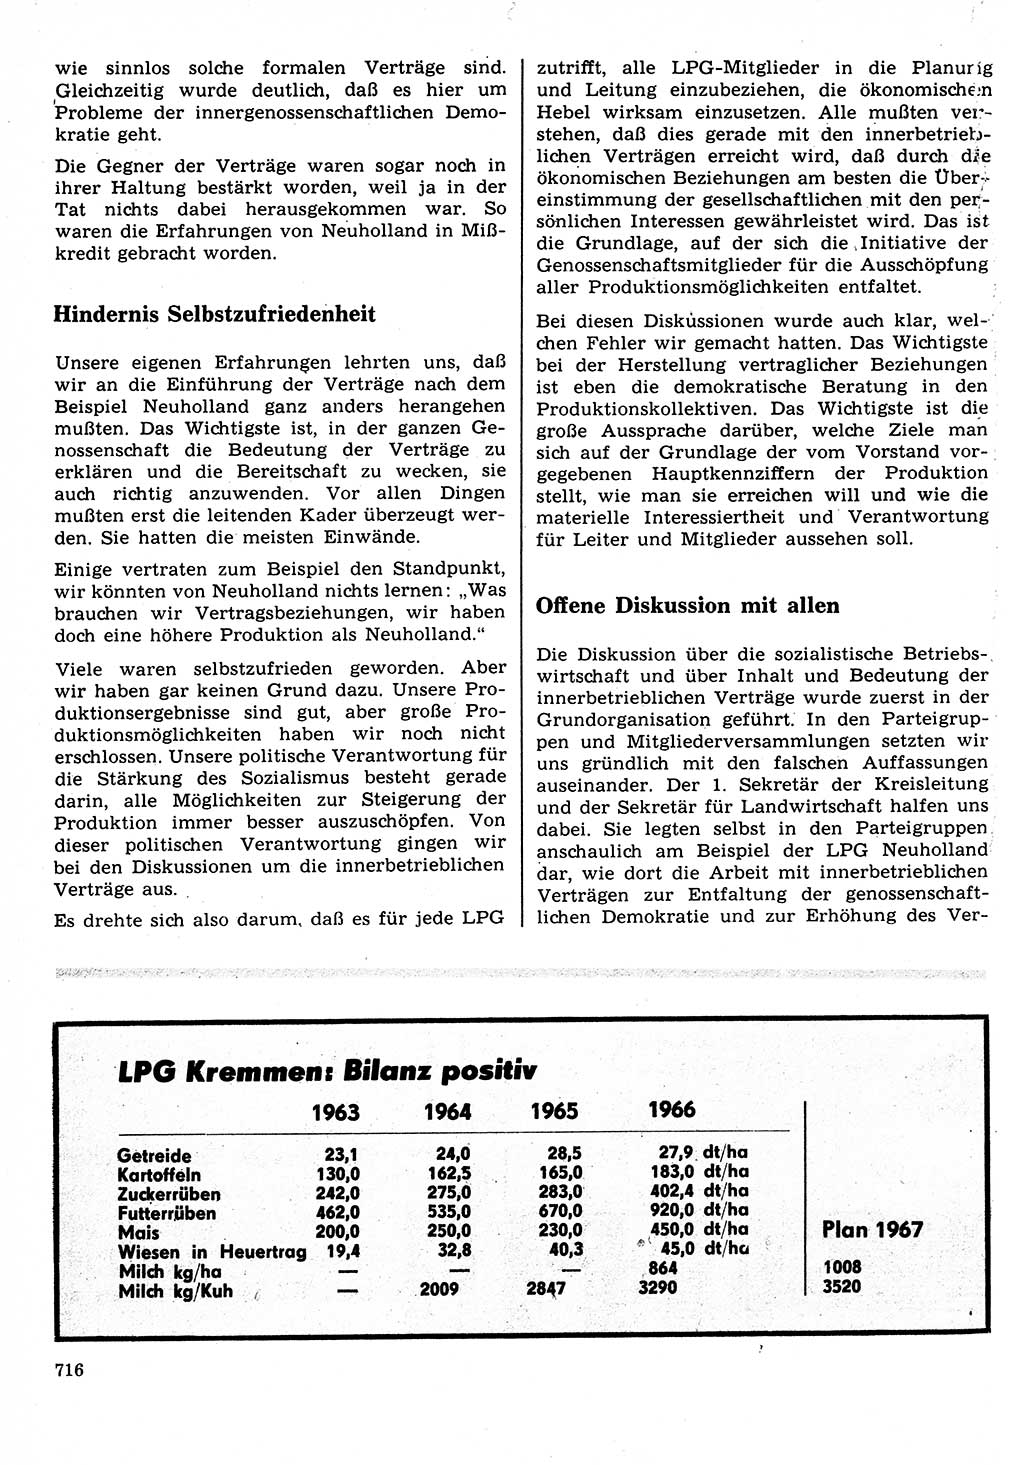 Neuer Weg (NW), Organ des Zentralkomitees (ZK) der SED (Sozialistische Einheitspartei Deutschlands) für Fragen des Parteilebens, 22. Jahrgang [Deutsche Demokratische Republik (DDR)] 1967, Seite 716 (NW ZK SED DDR 1967, S. 716)